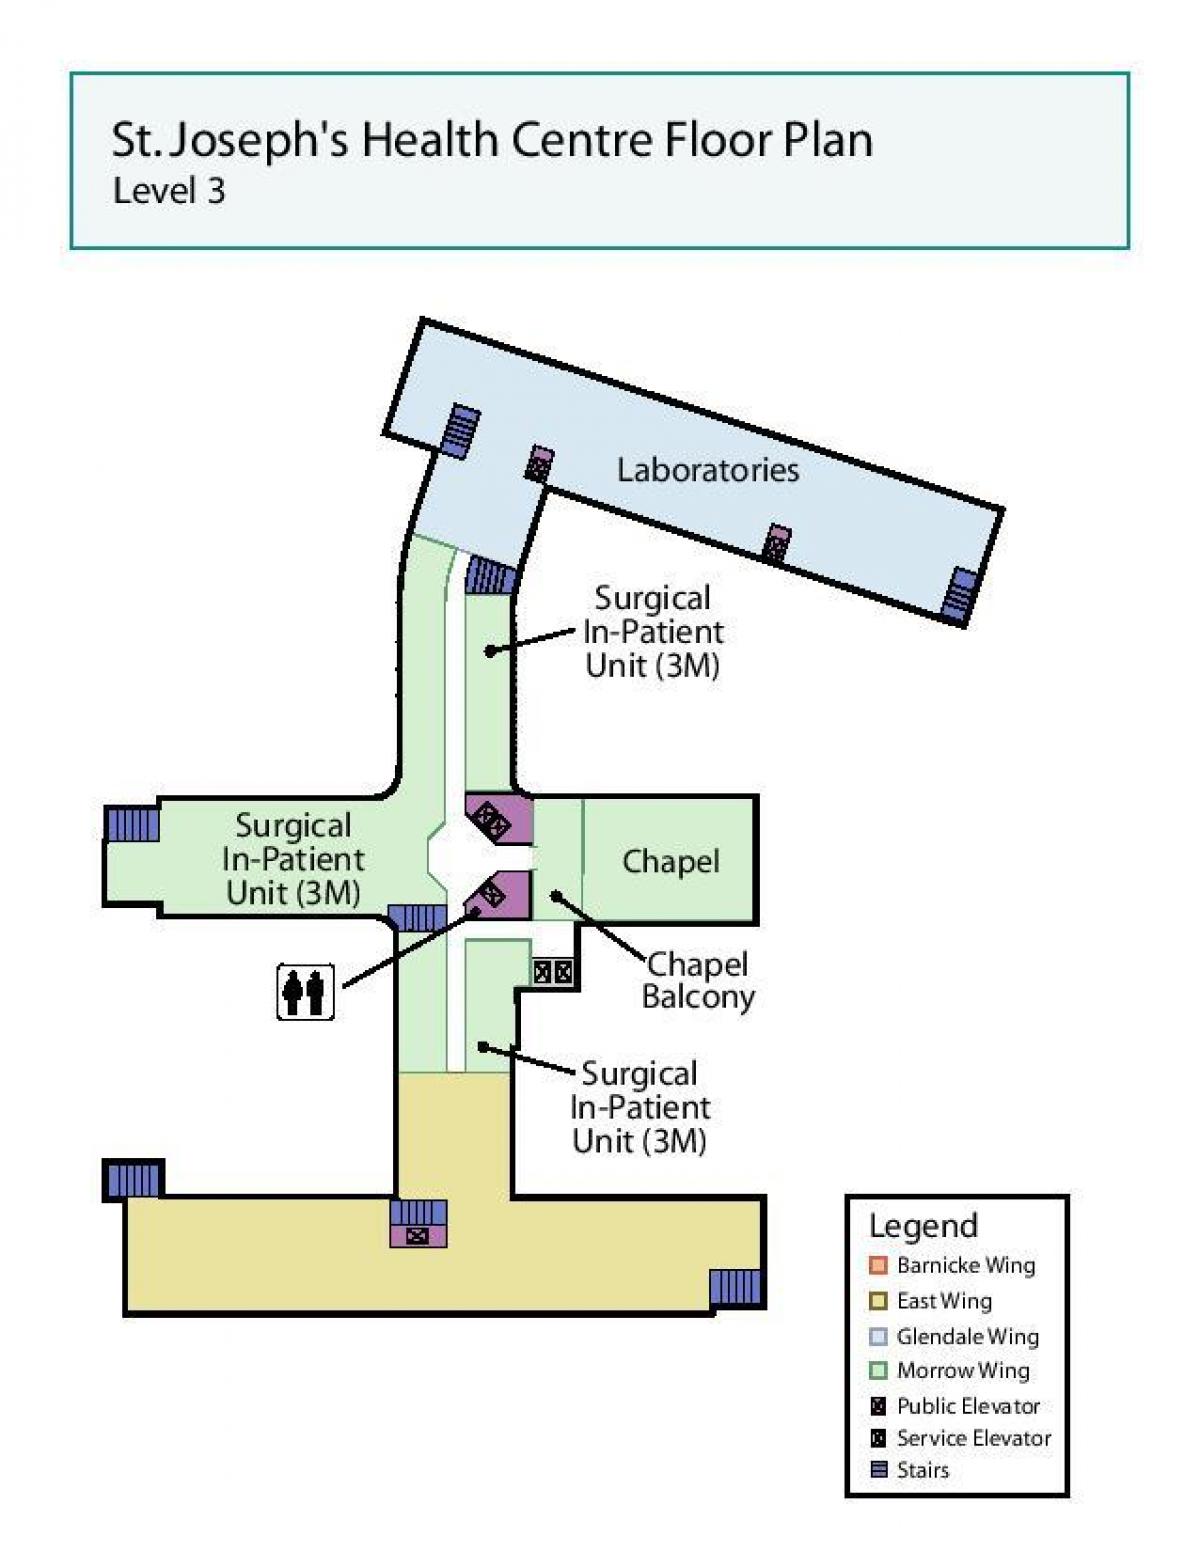 Harta e Shën Jozefit në qendrën Shëndetësore të Torontos niveli 3